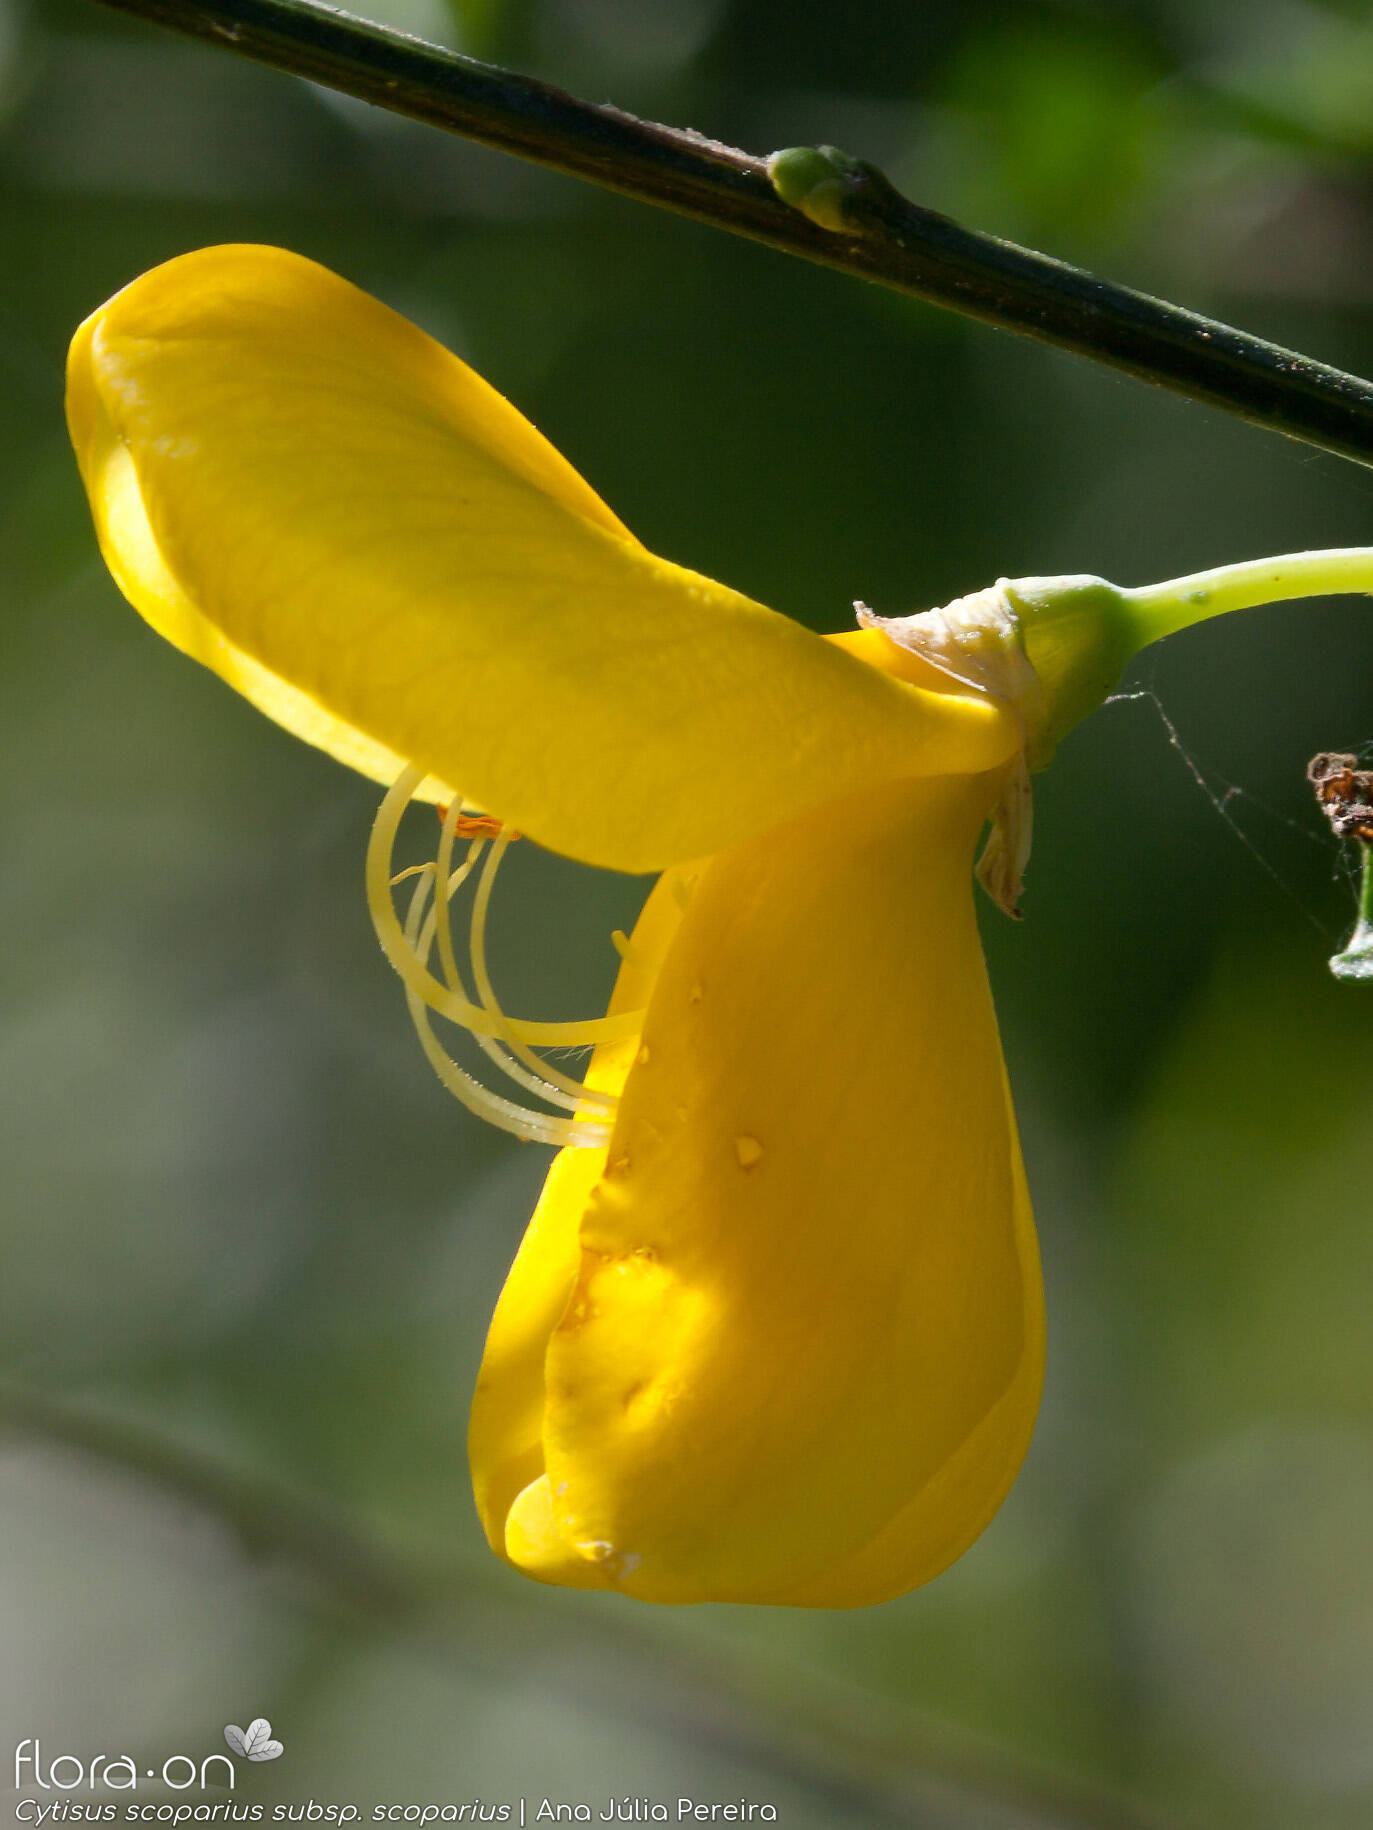 Cytisus scoparius scoparius - Flor (close-up) | Ana Júlia Pereira; CC BY-NC 4.0